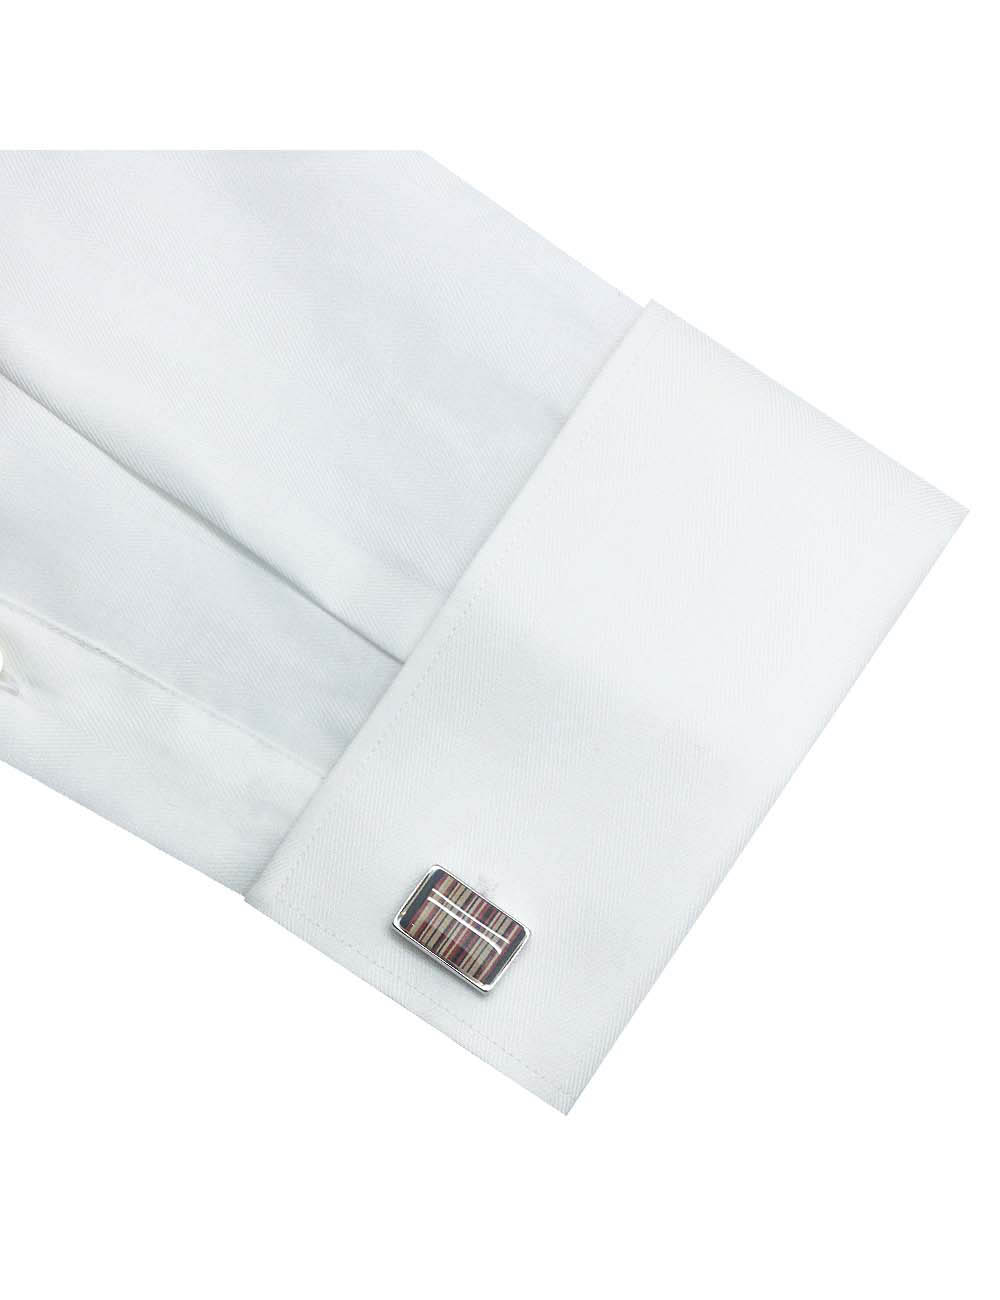 White Herringbone Wrinkle Free Double Cuff Modern / Classic Fit Long Sleeve Shirt - CF3D5.20